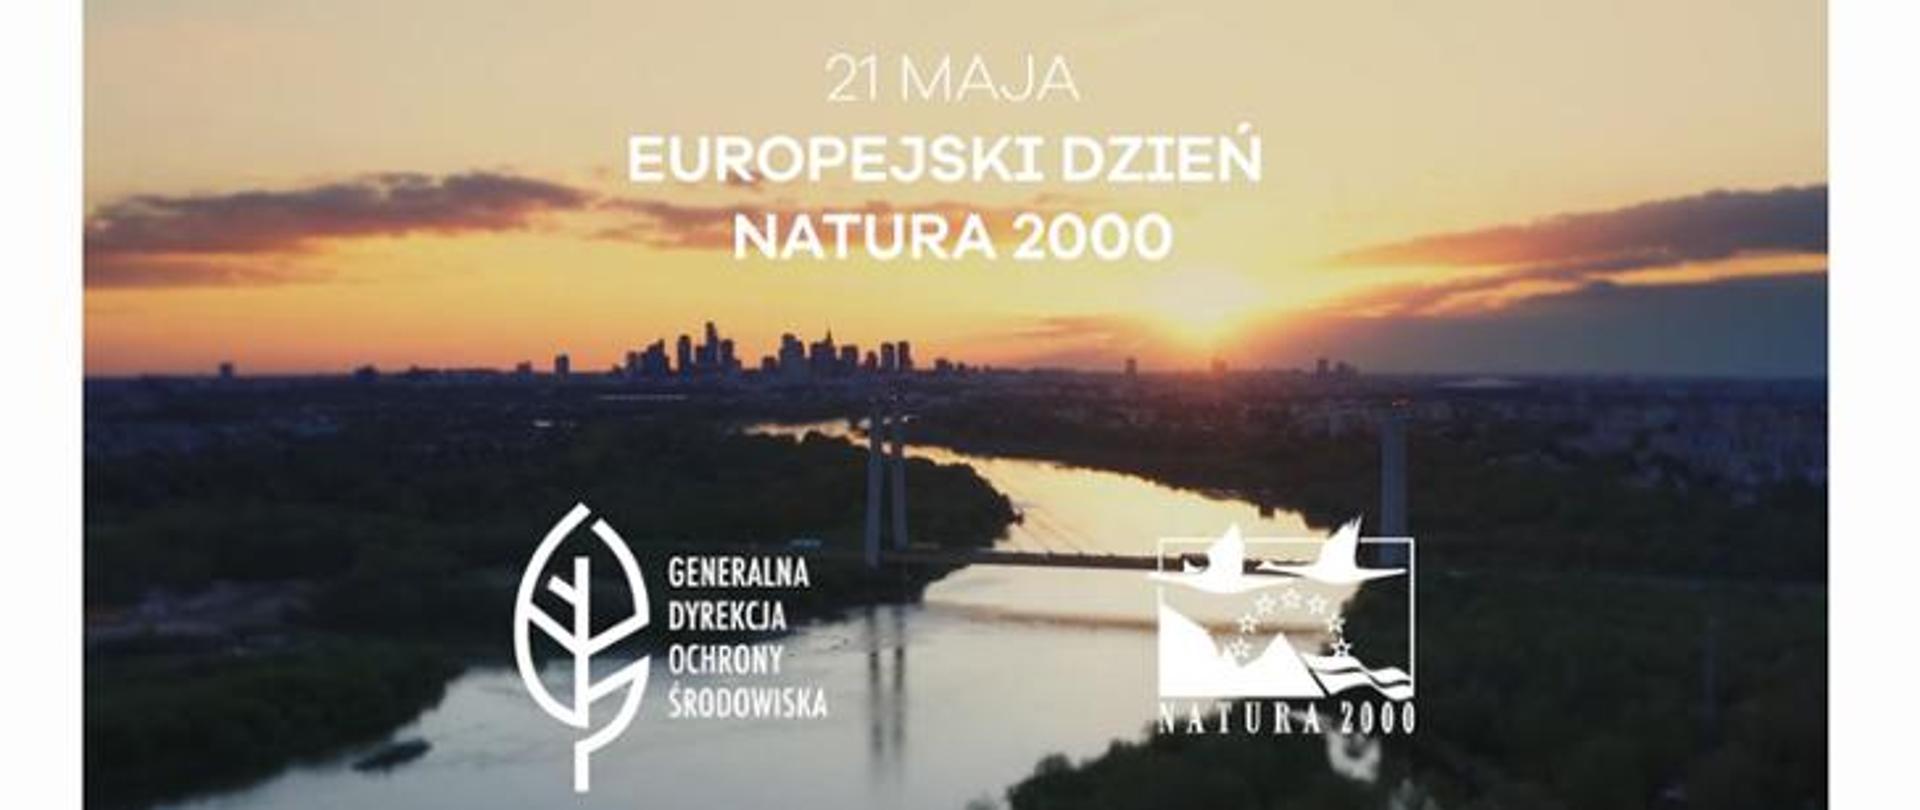 Zdjęcie przedstawia zakole rzeki. W oddali widać zachód słońca. U góry zdjęcia jest napis: 21 maja - Europejski Dzień Natura 2000. Na dole zdjęcia są dwa loga. Jedno przedstawia Generalną Dyrekcję Ochrony Środowiska, drugie przedstawia Europejską Sieć Ekologiczną Natura 2000.